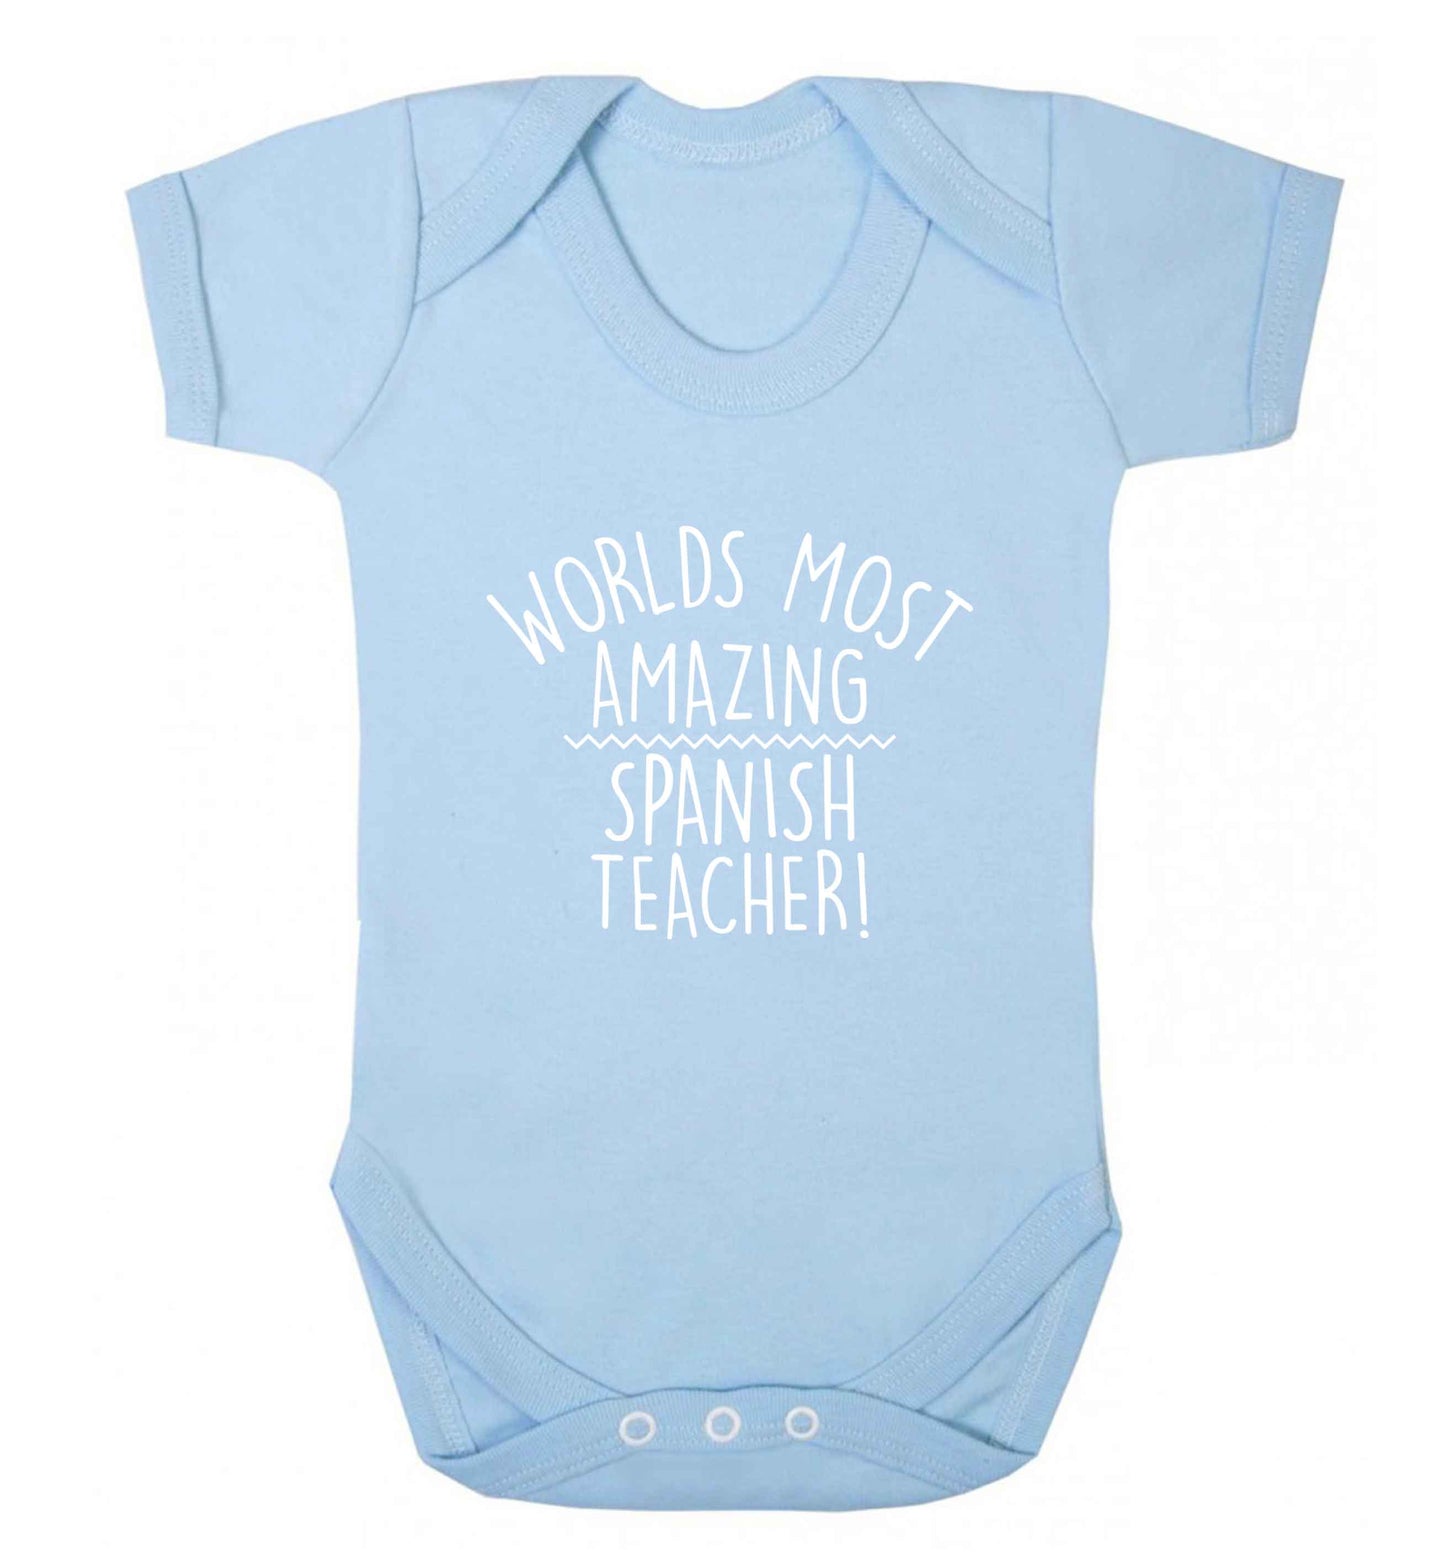 Worlds most amazing Spanish teacher baby vest pale blue 18-24 months